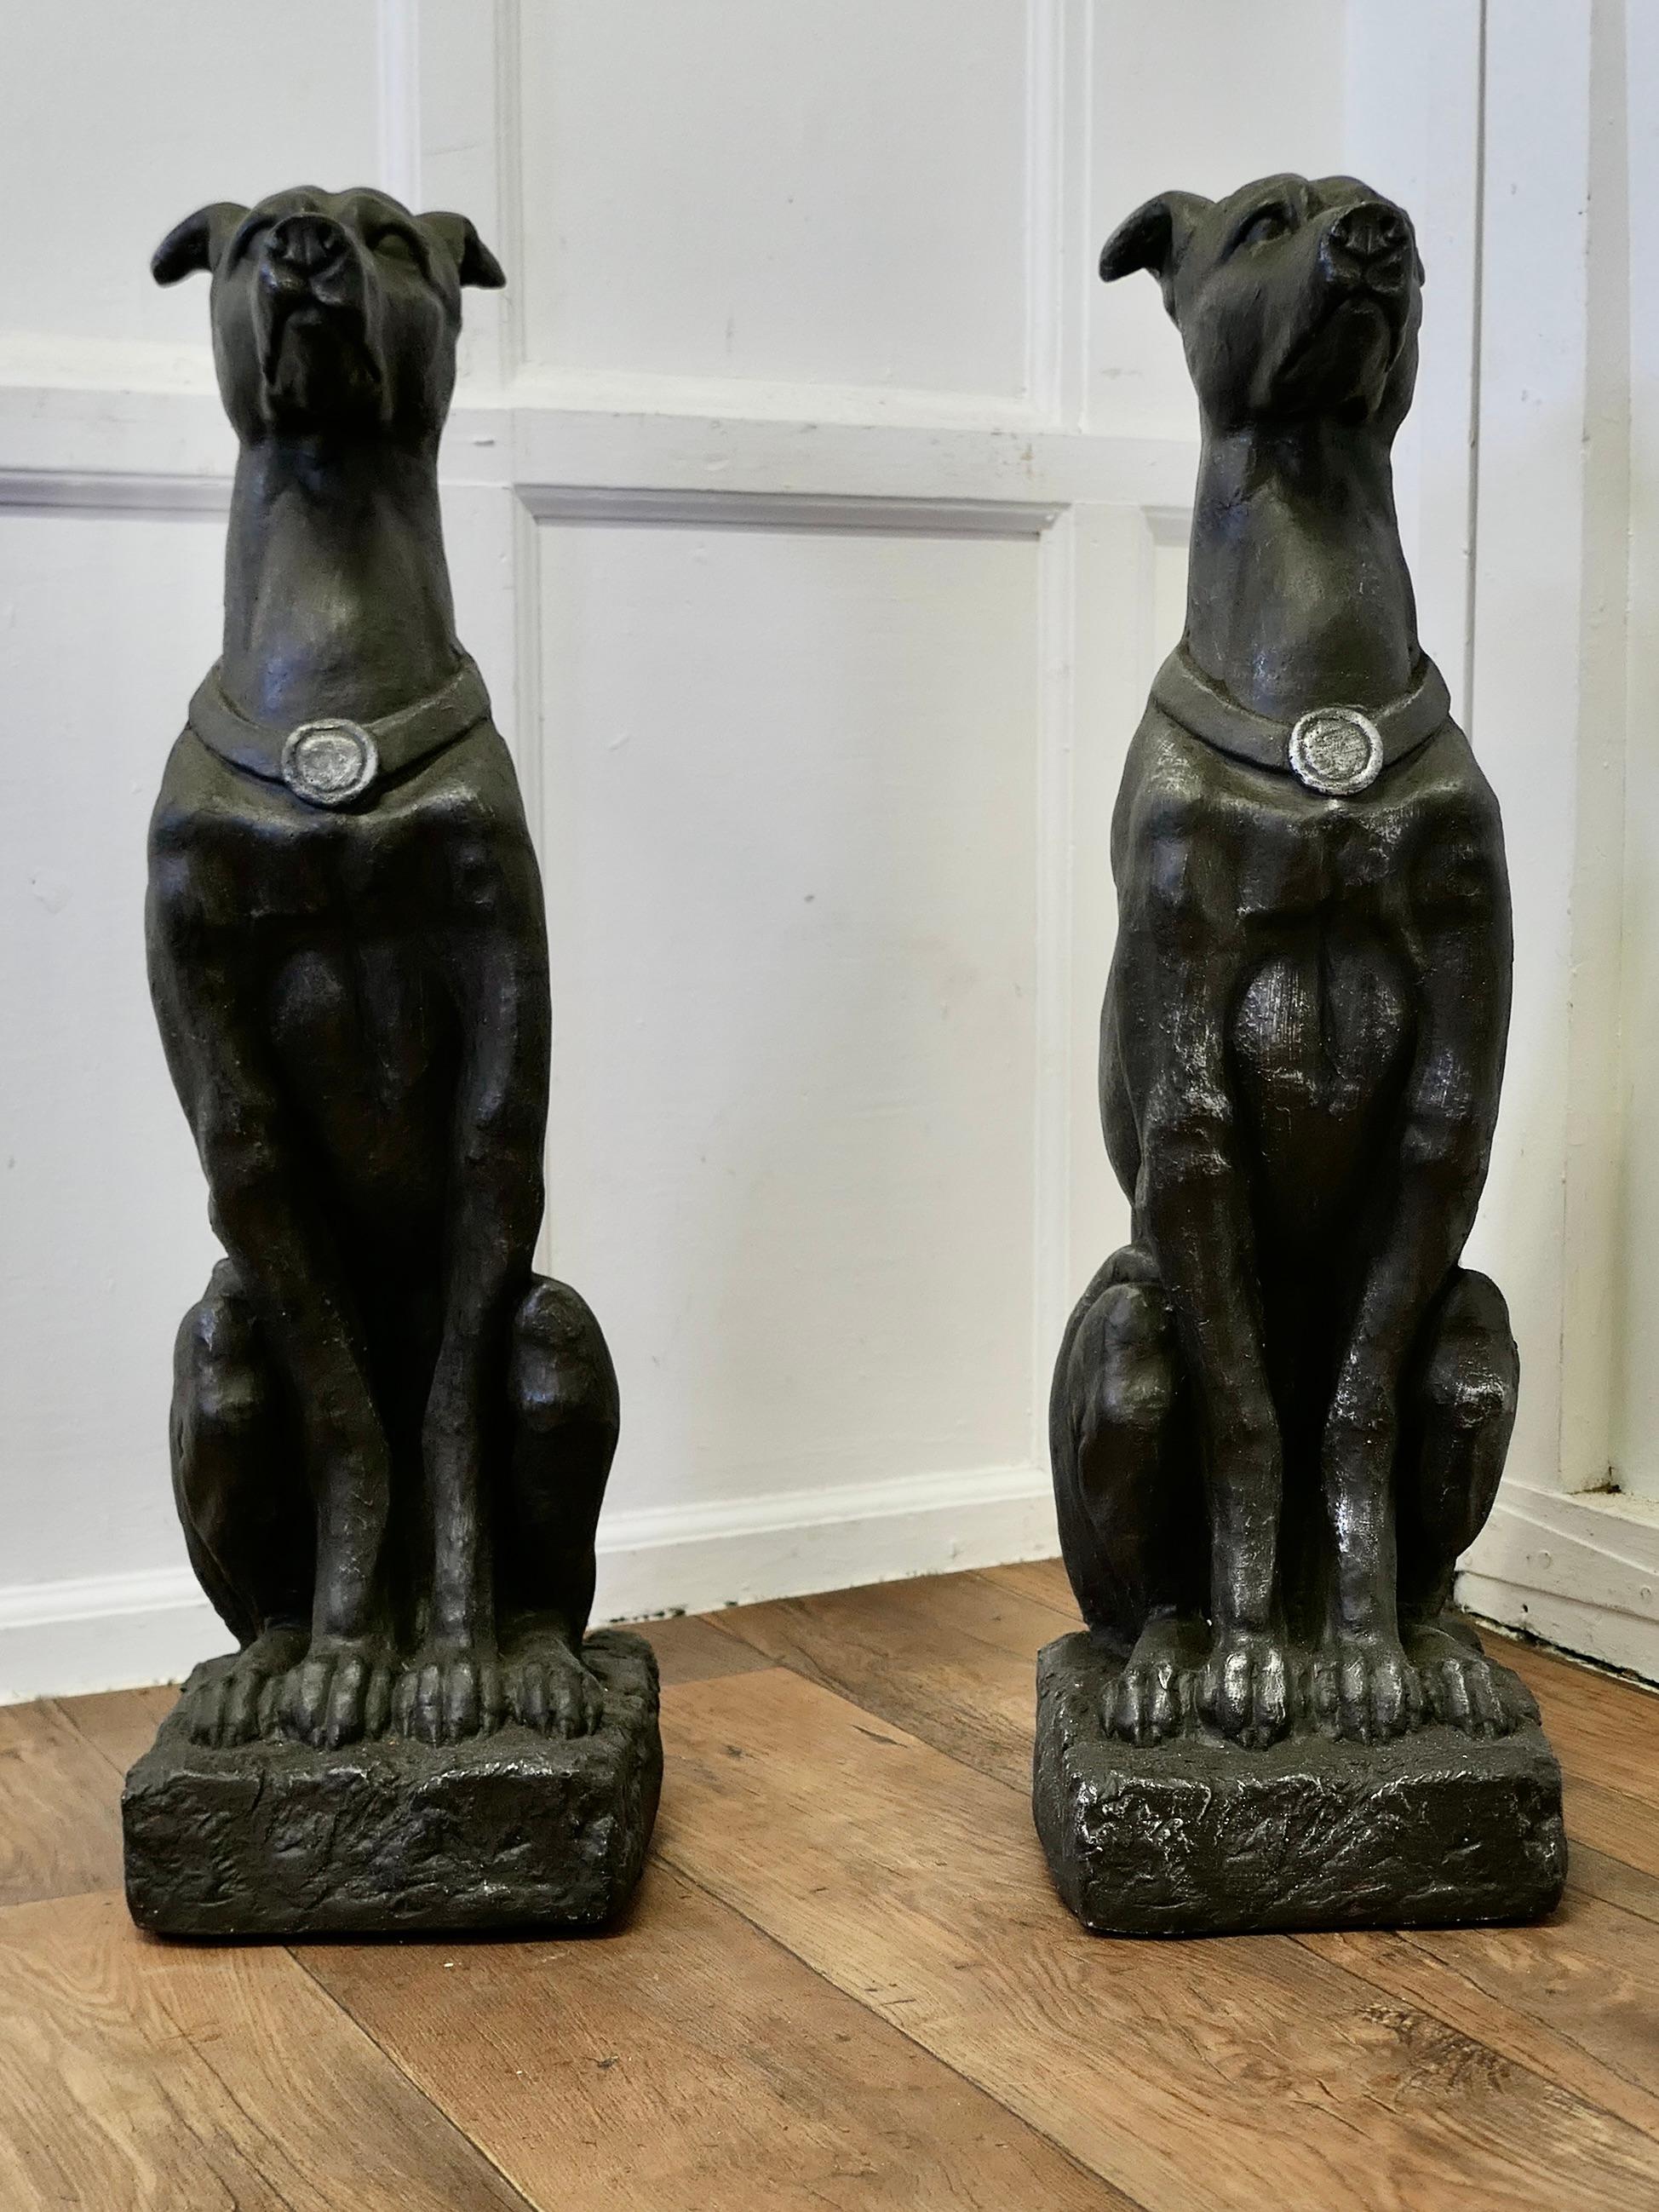 Paire de grands chiens lévriers sculptés

Cette Super paire de chiens a une bonne patine, ils semblent avoir été fabriqués avec une ancienne finition d'acier poli.
Ils sont en très bon état et présentent une belle patine d'usage.

Les lévriers